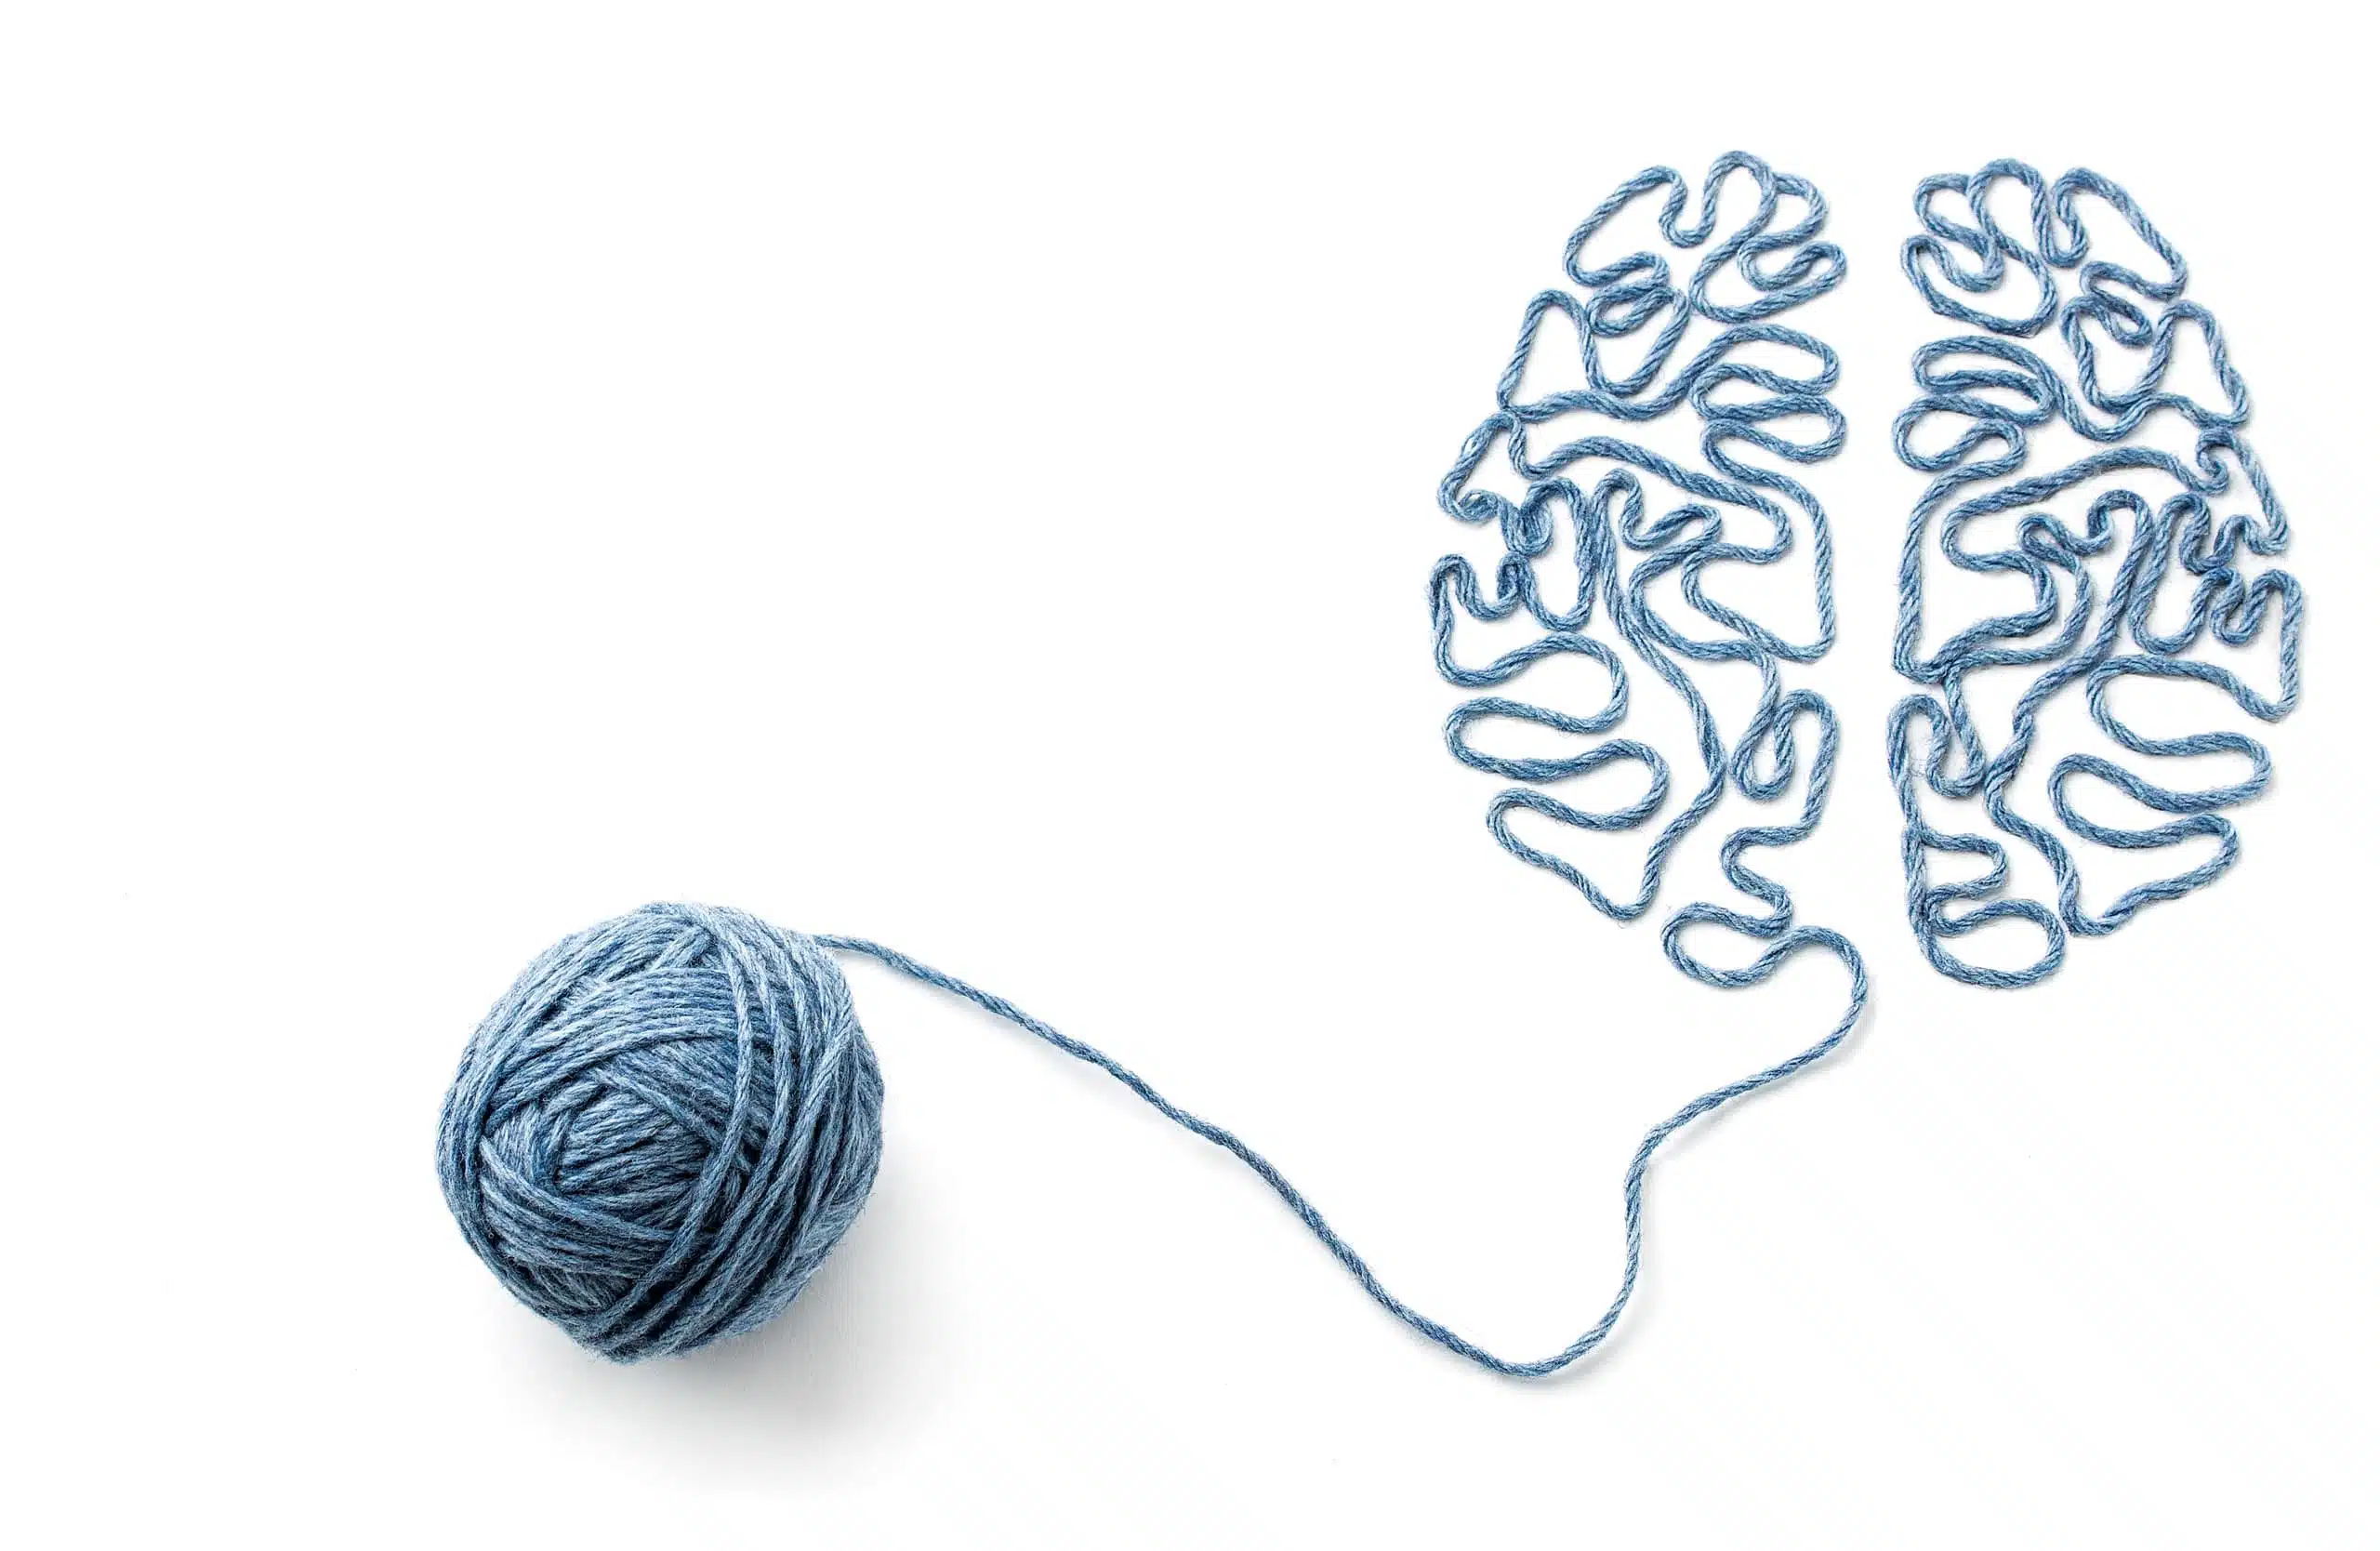 Pelote de laine et de fil en forme de cerveau